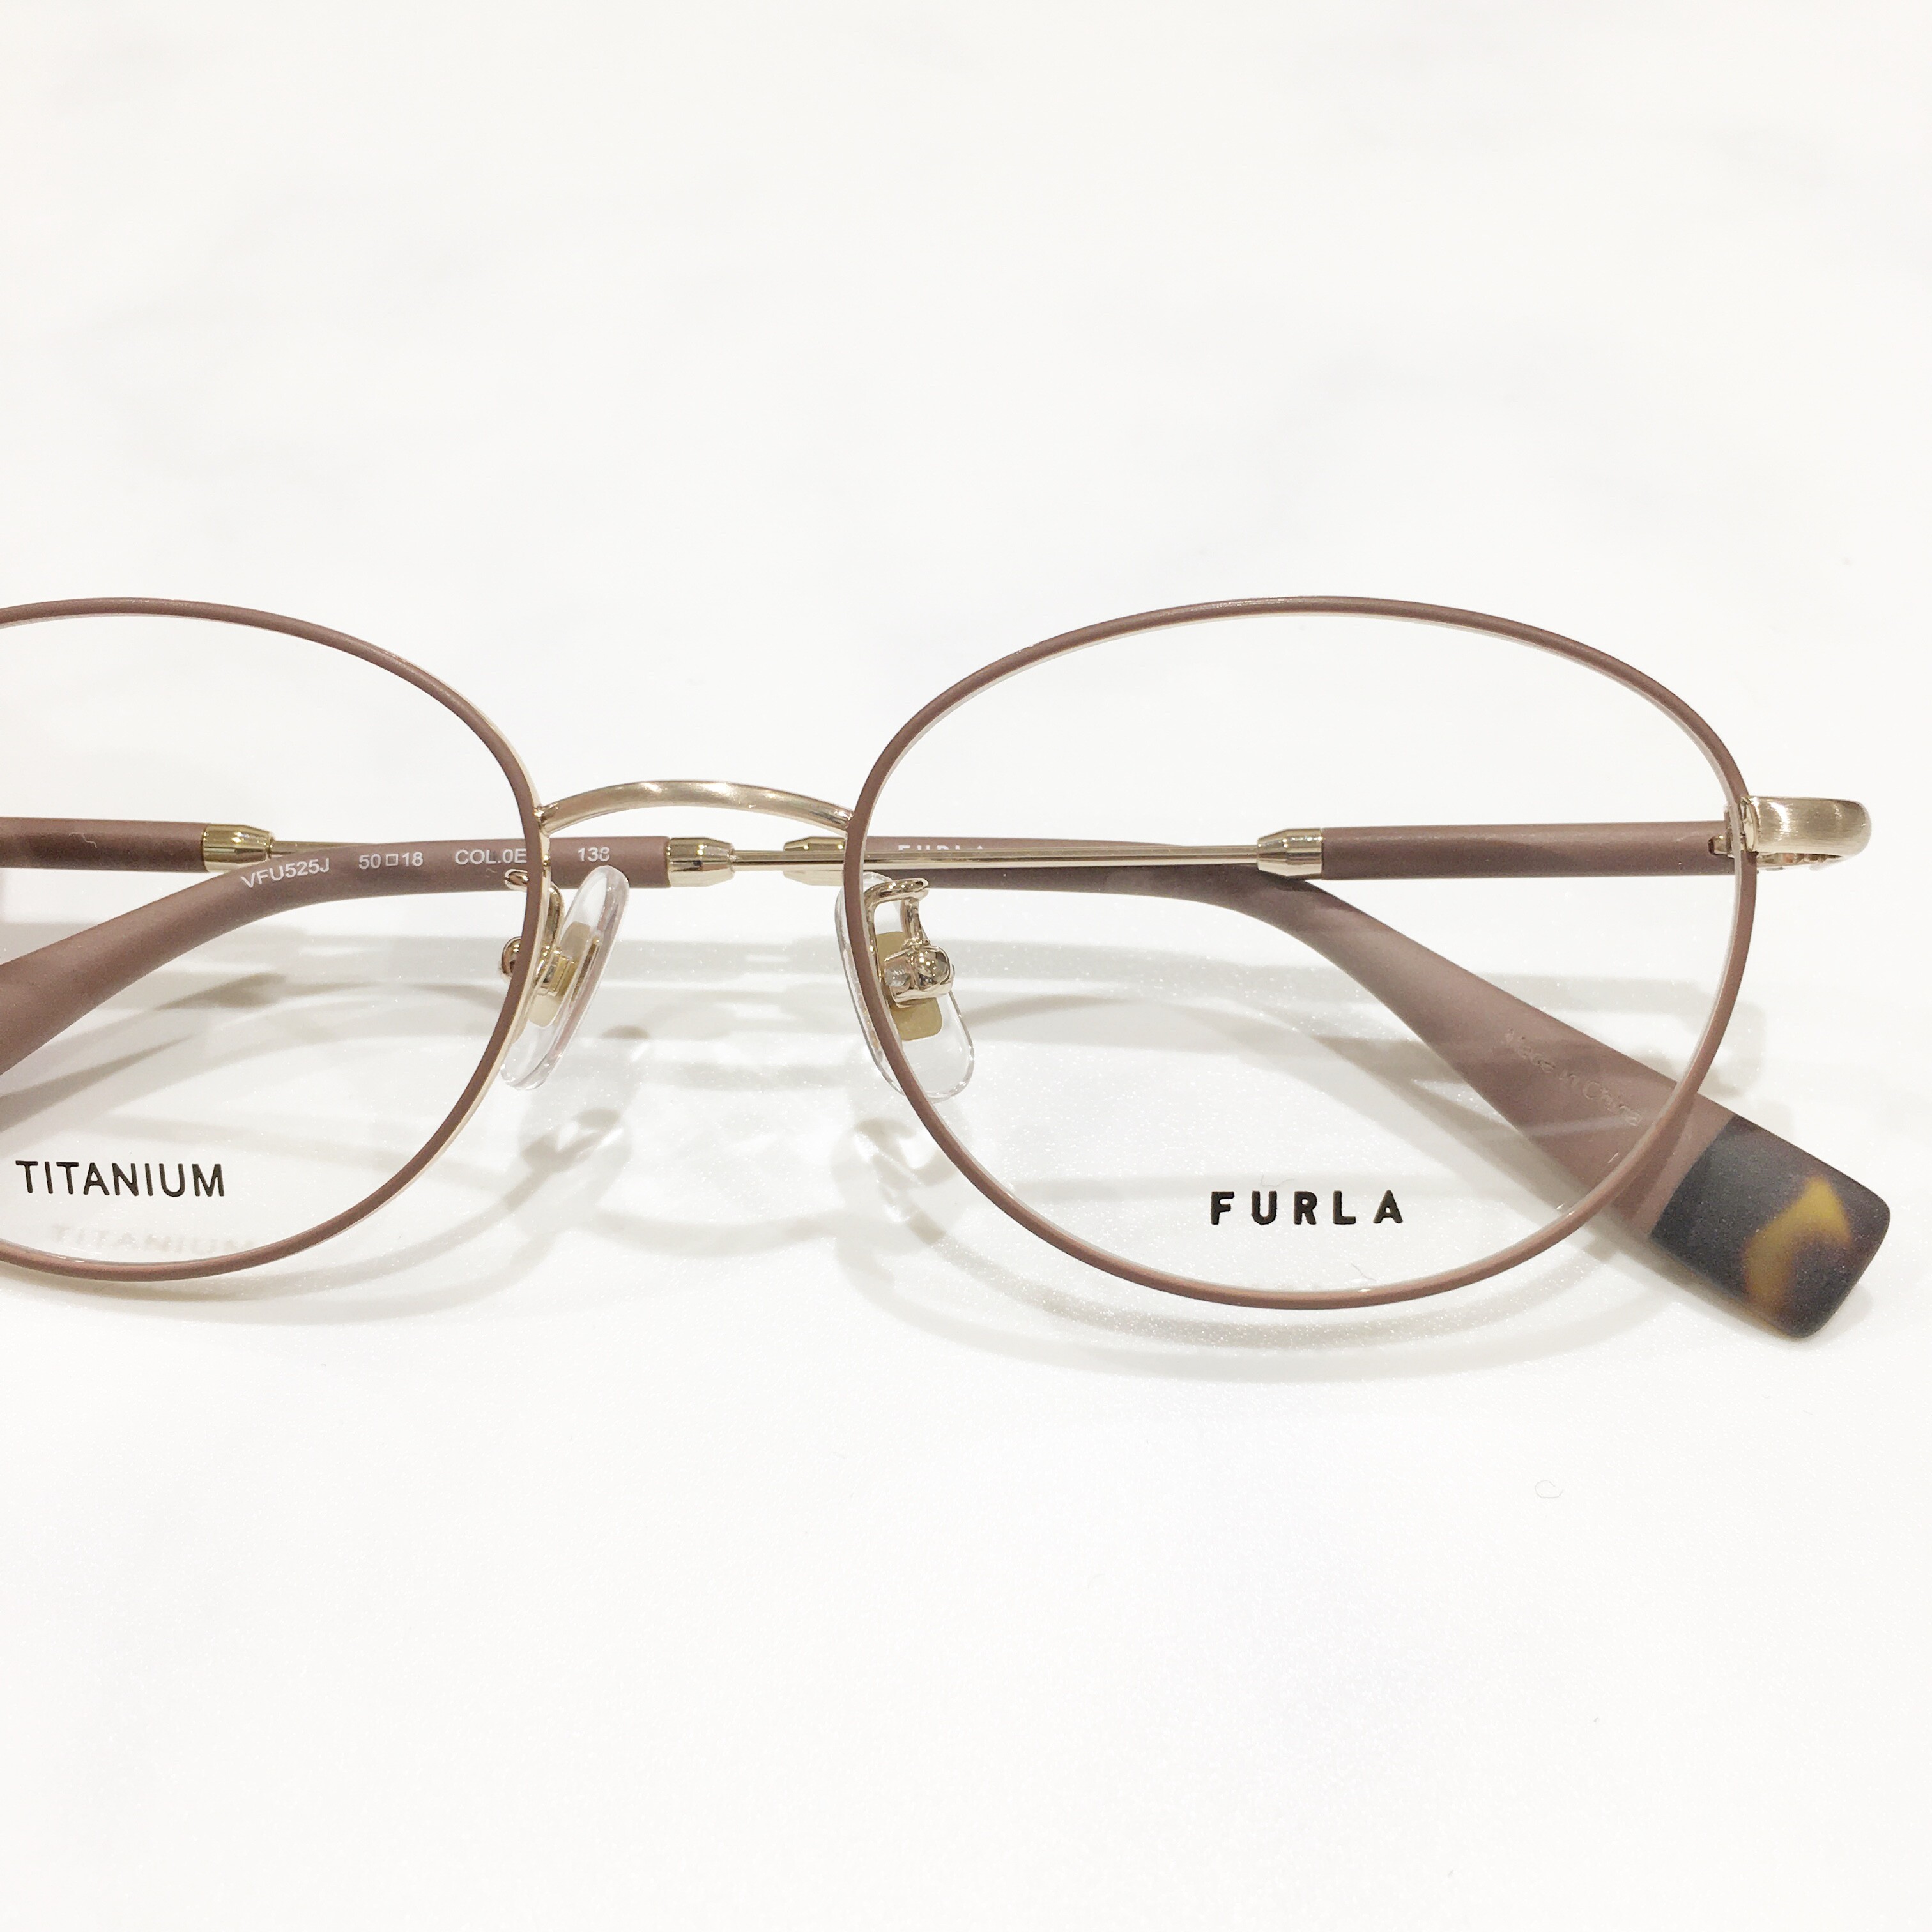 【FURLA】マットカラーが可愛いメガネ♪